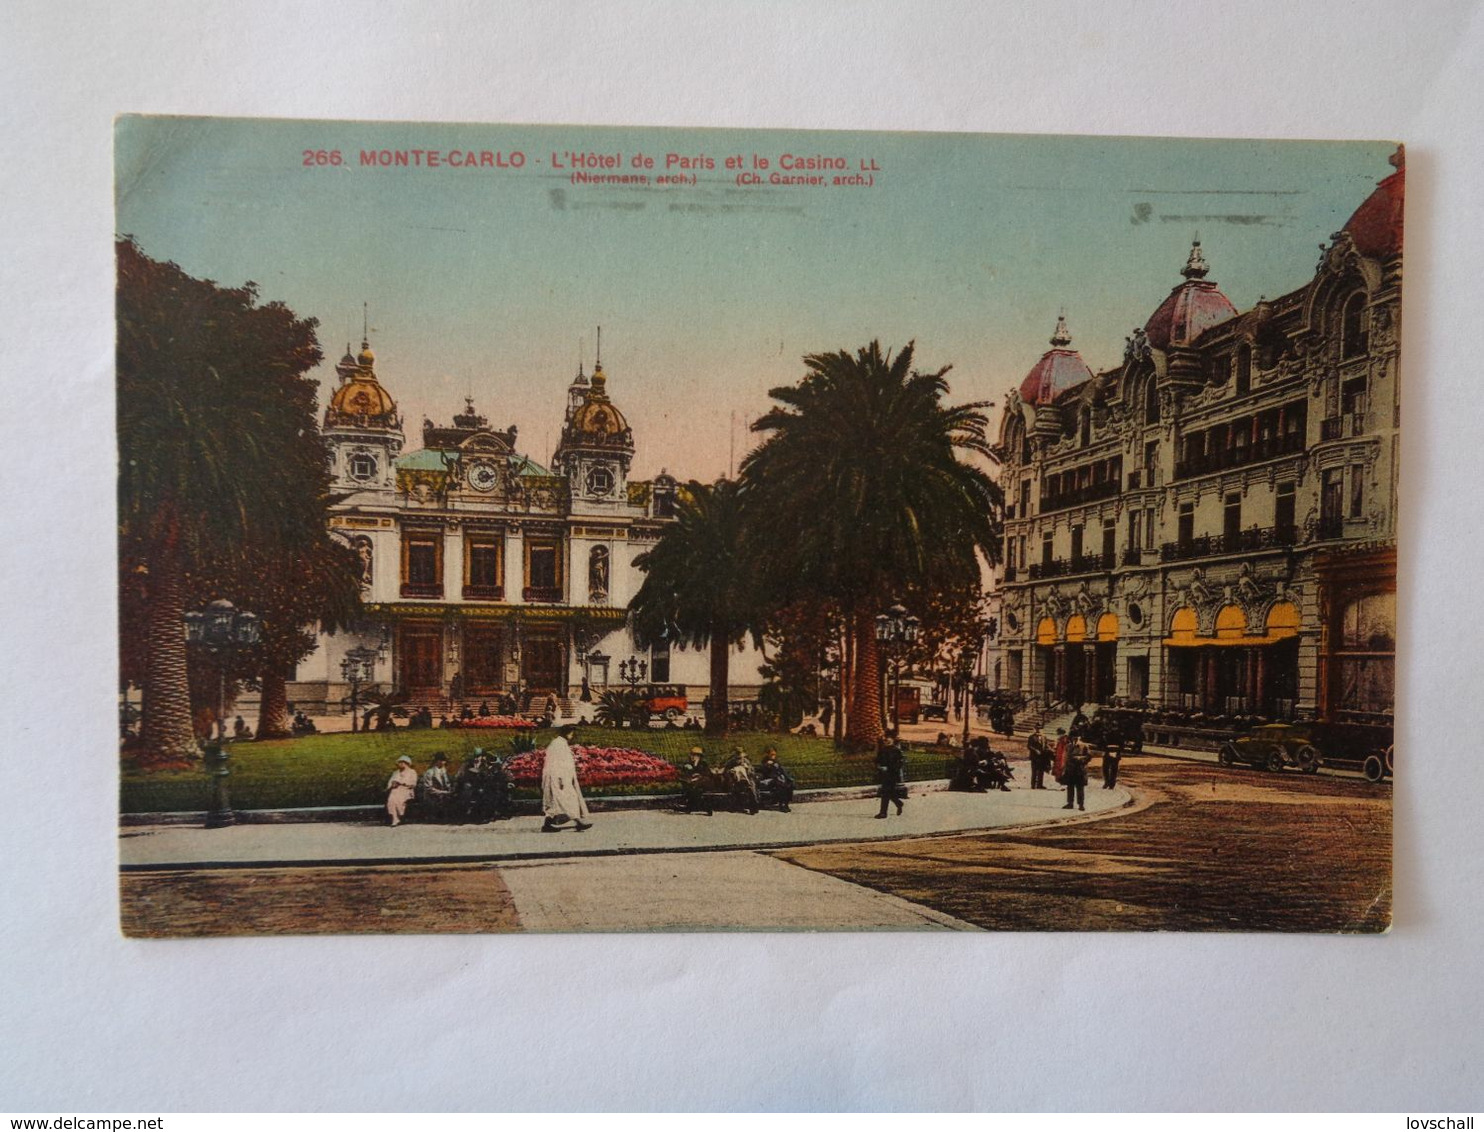 Monte-Carlo. - L'Hôtel De Paris Et Le Casino.(14 - 9 - 1928) - Hotels